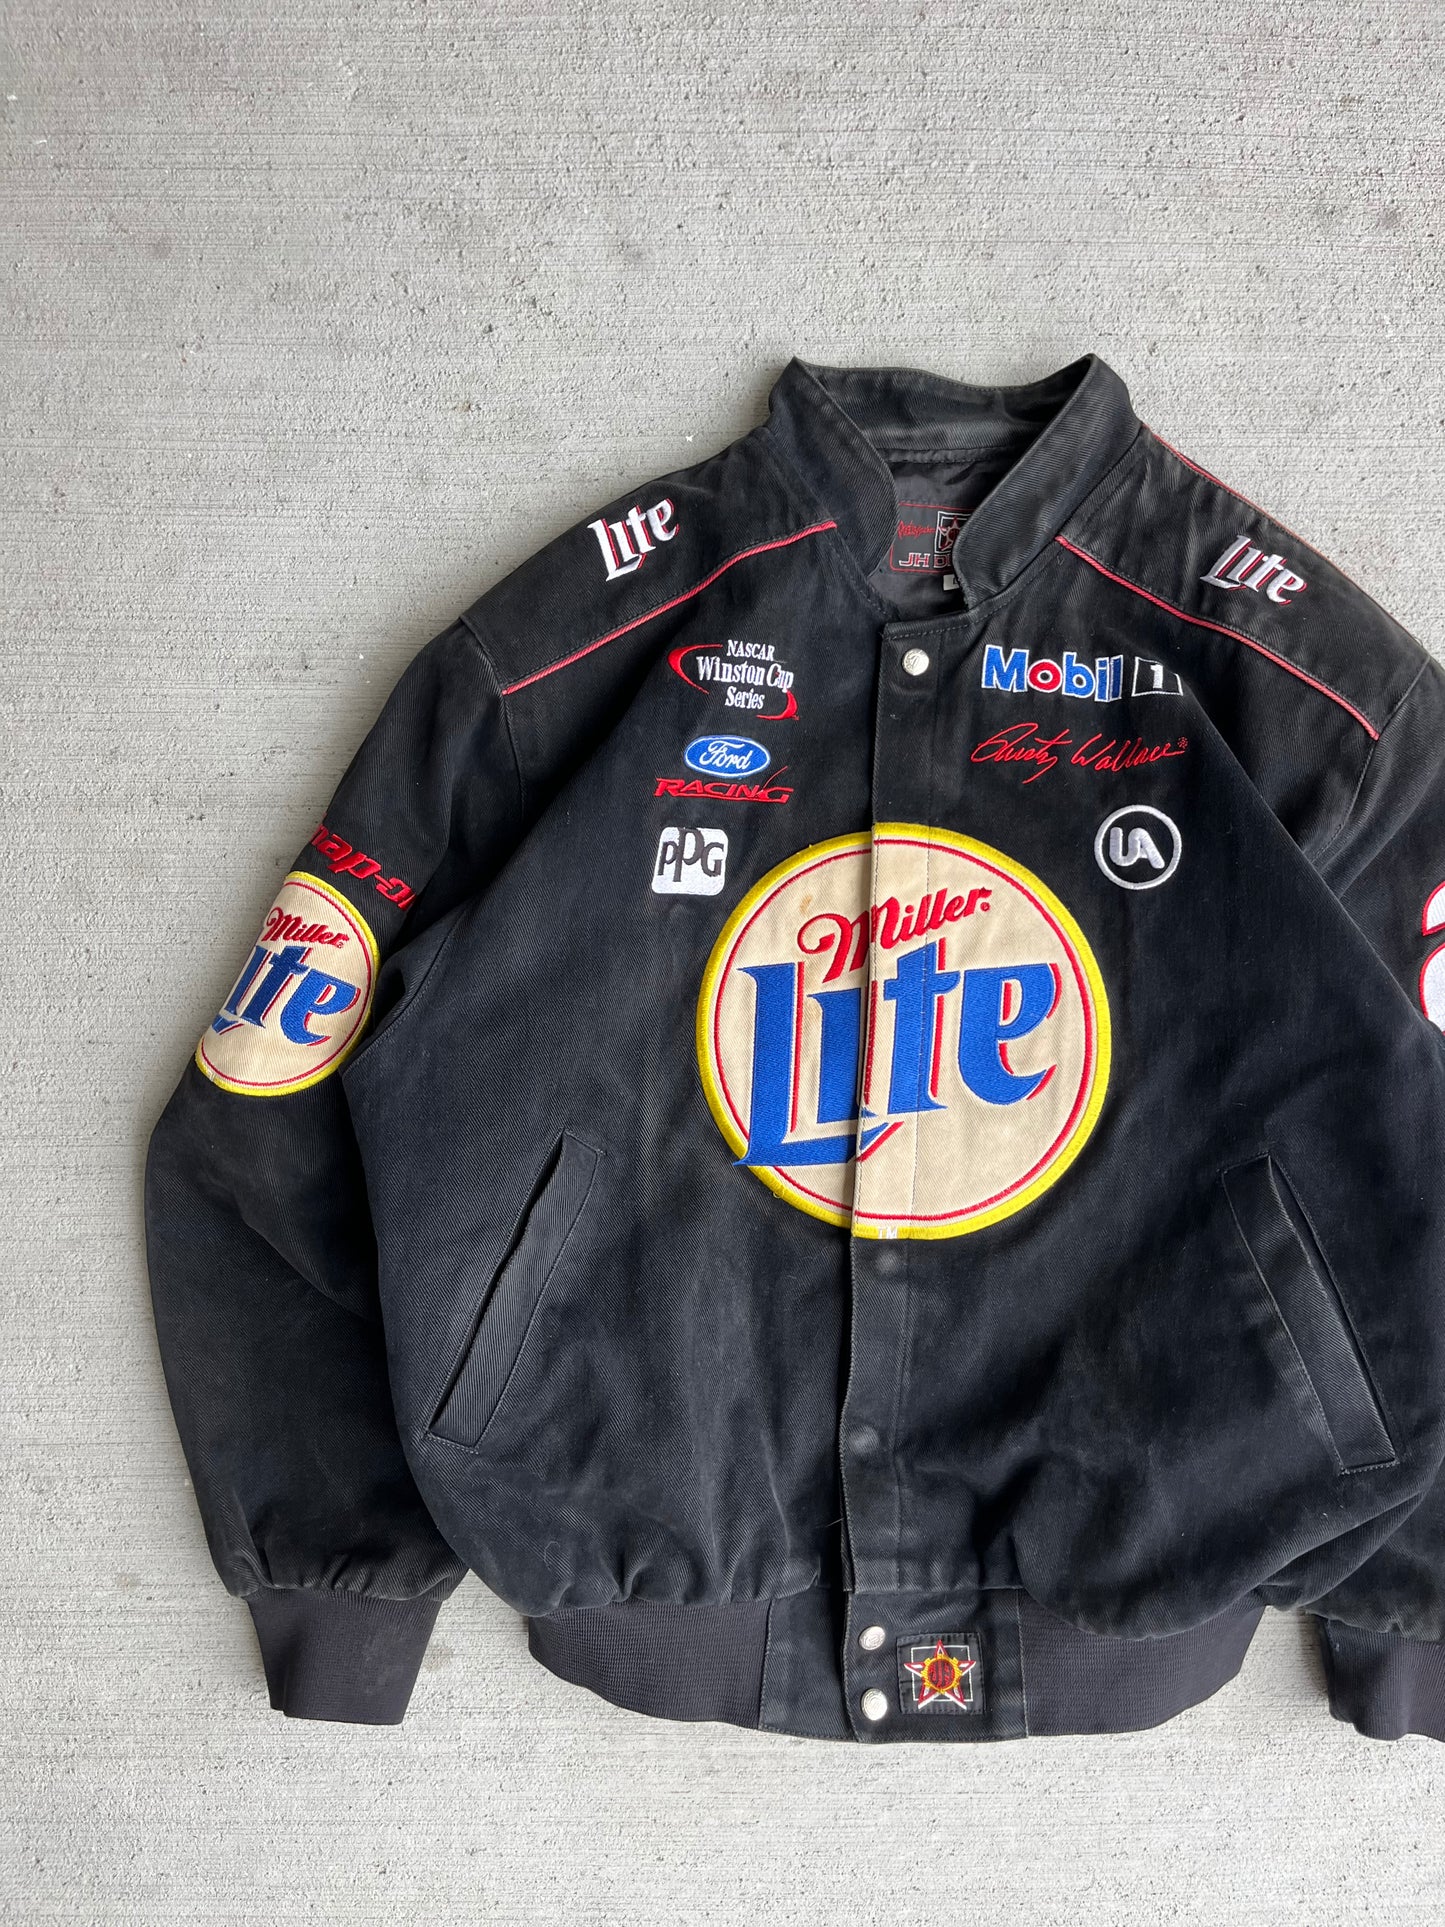 (L) 90s Miller Lite Racing Jacket